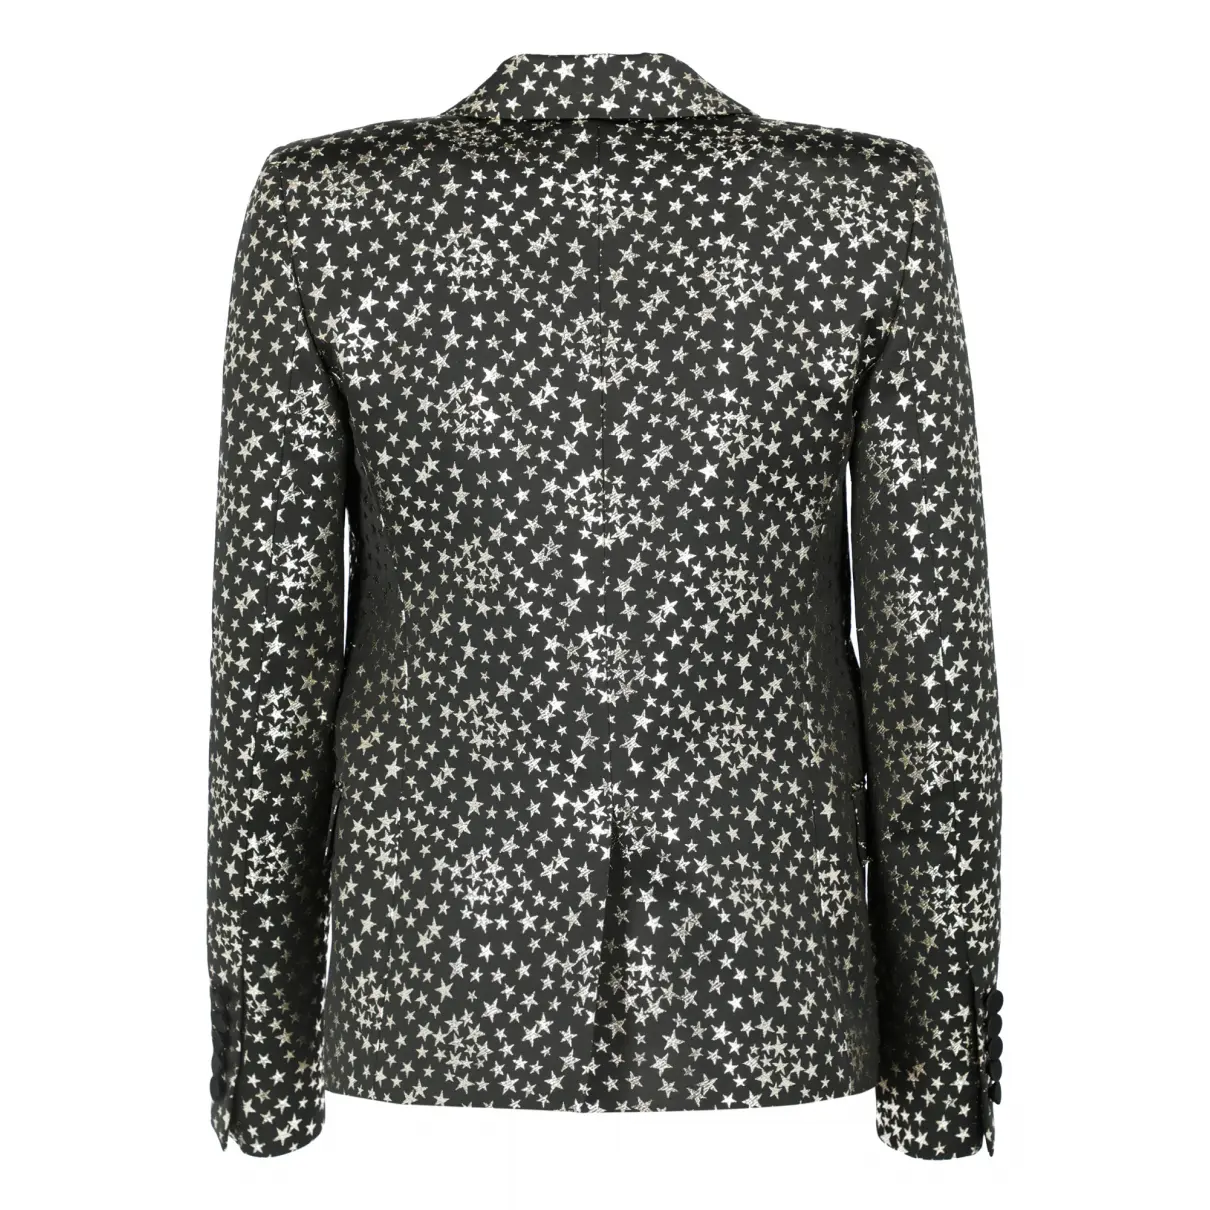 Buy Saint Laurent Black Cotton Jacket online